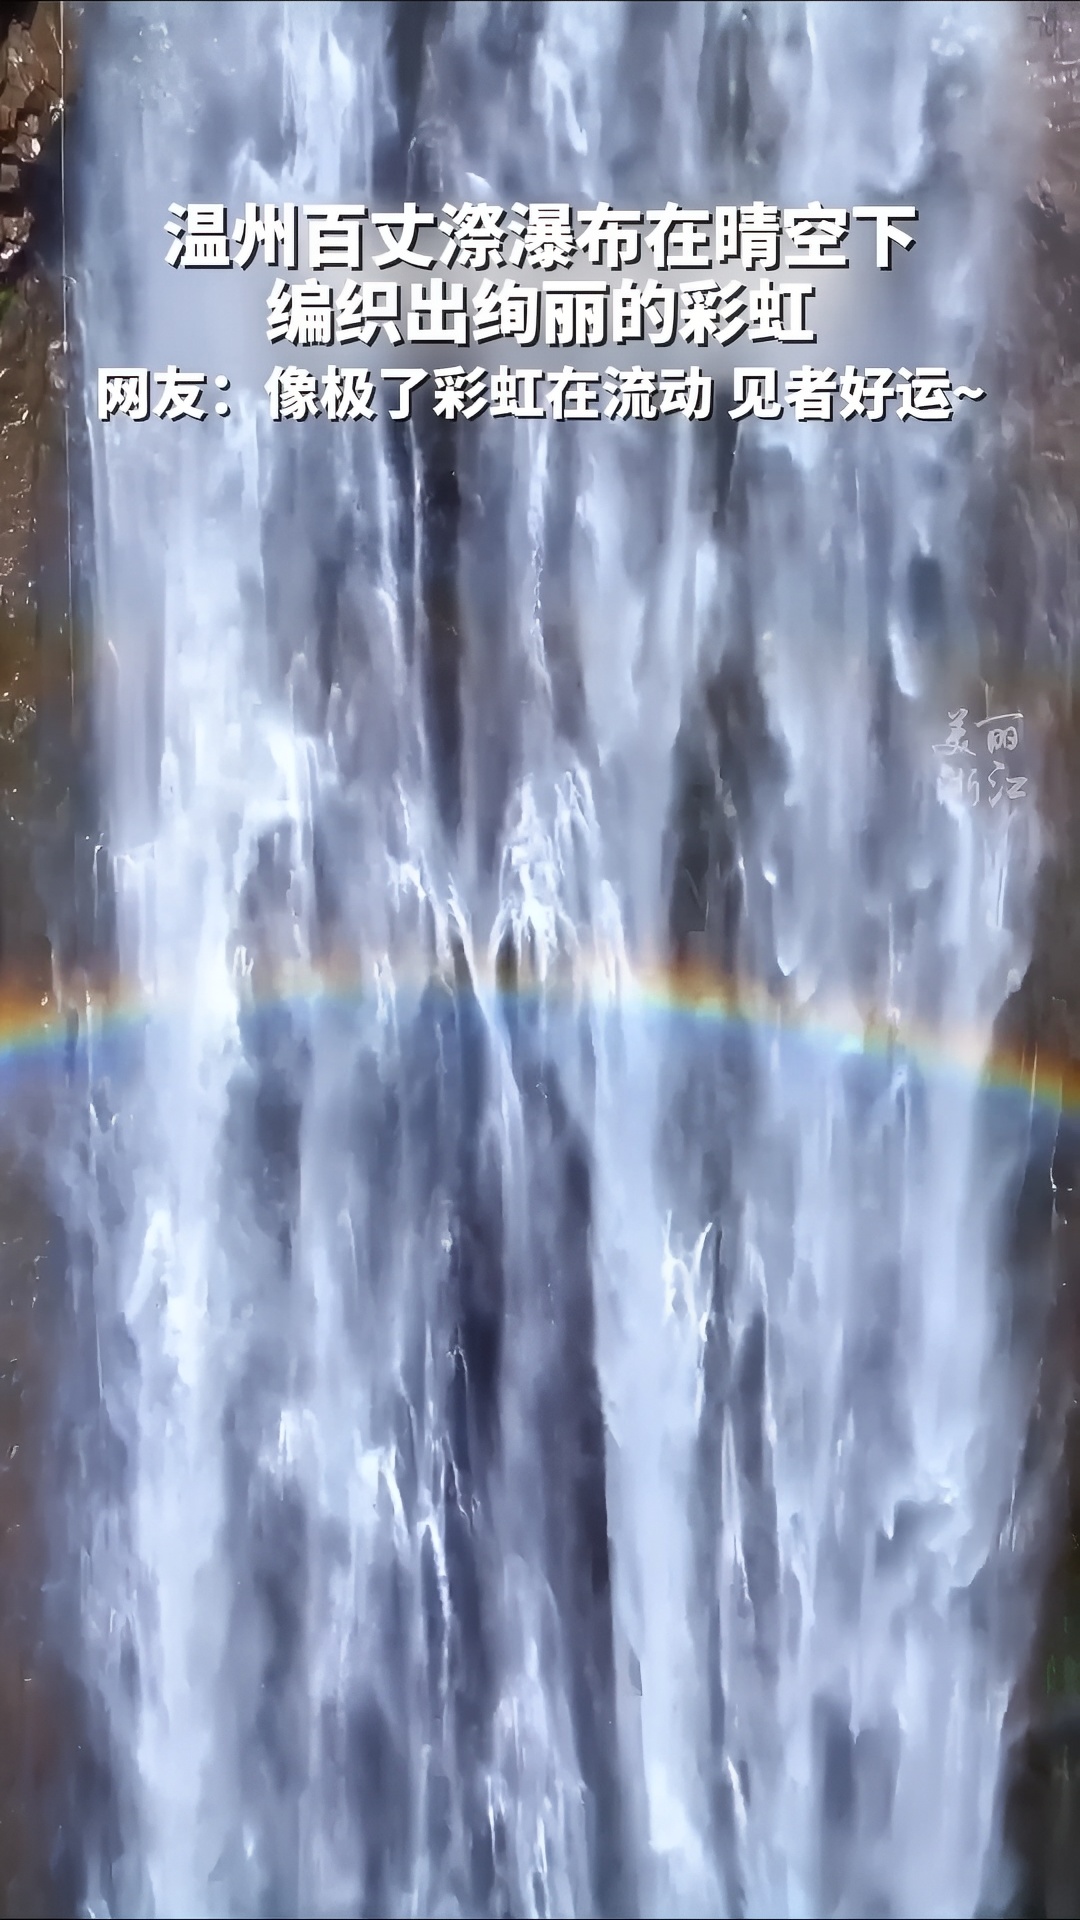 温州百丈漈瀑布，在睛空下编织出绚丽的 彩虹！ #遇见彩虹 #看瀑布的好地方 #温州百丈漈瀑布有多美